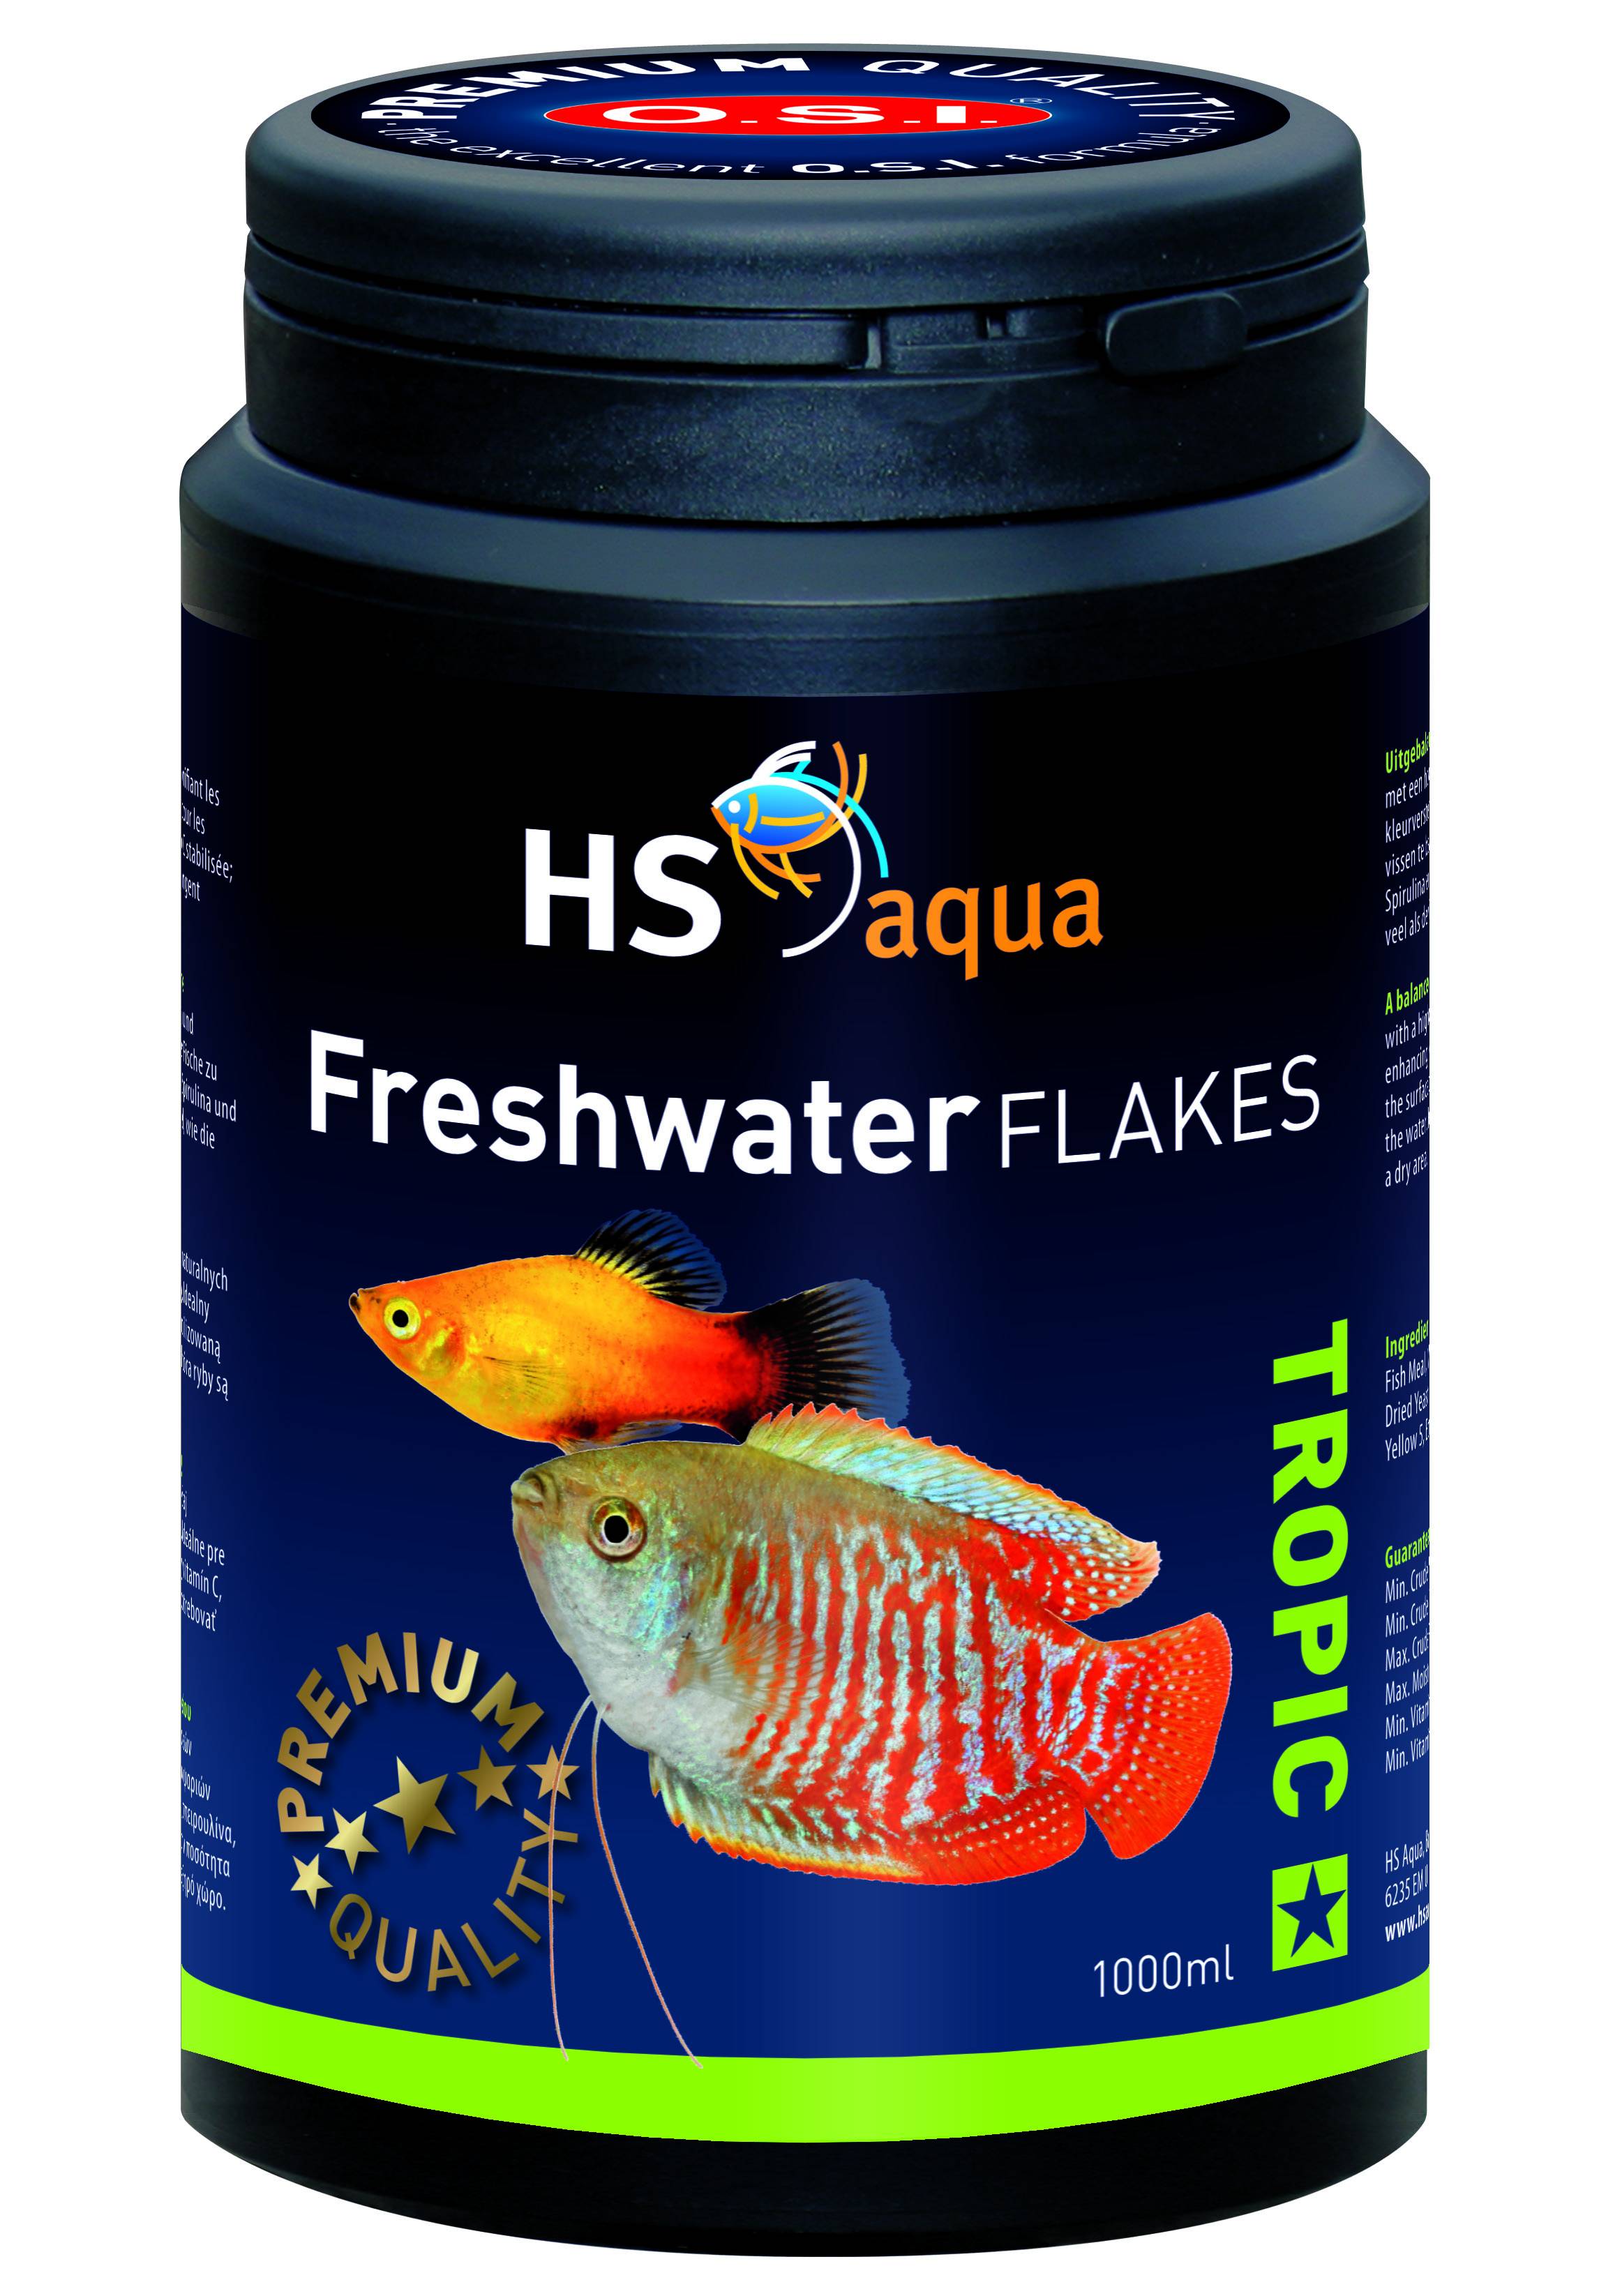 Bloeien gebruiker congestie Aquaplantsonline - Aquaplantsonline voor al uw aquariumplanten en producten